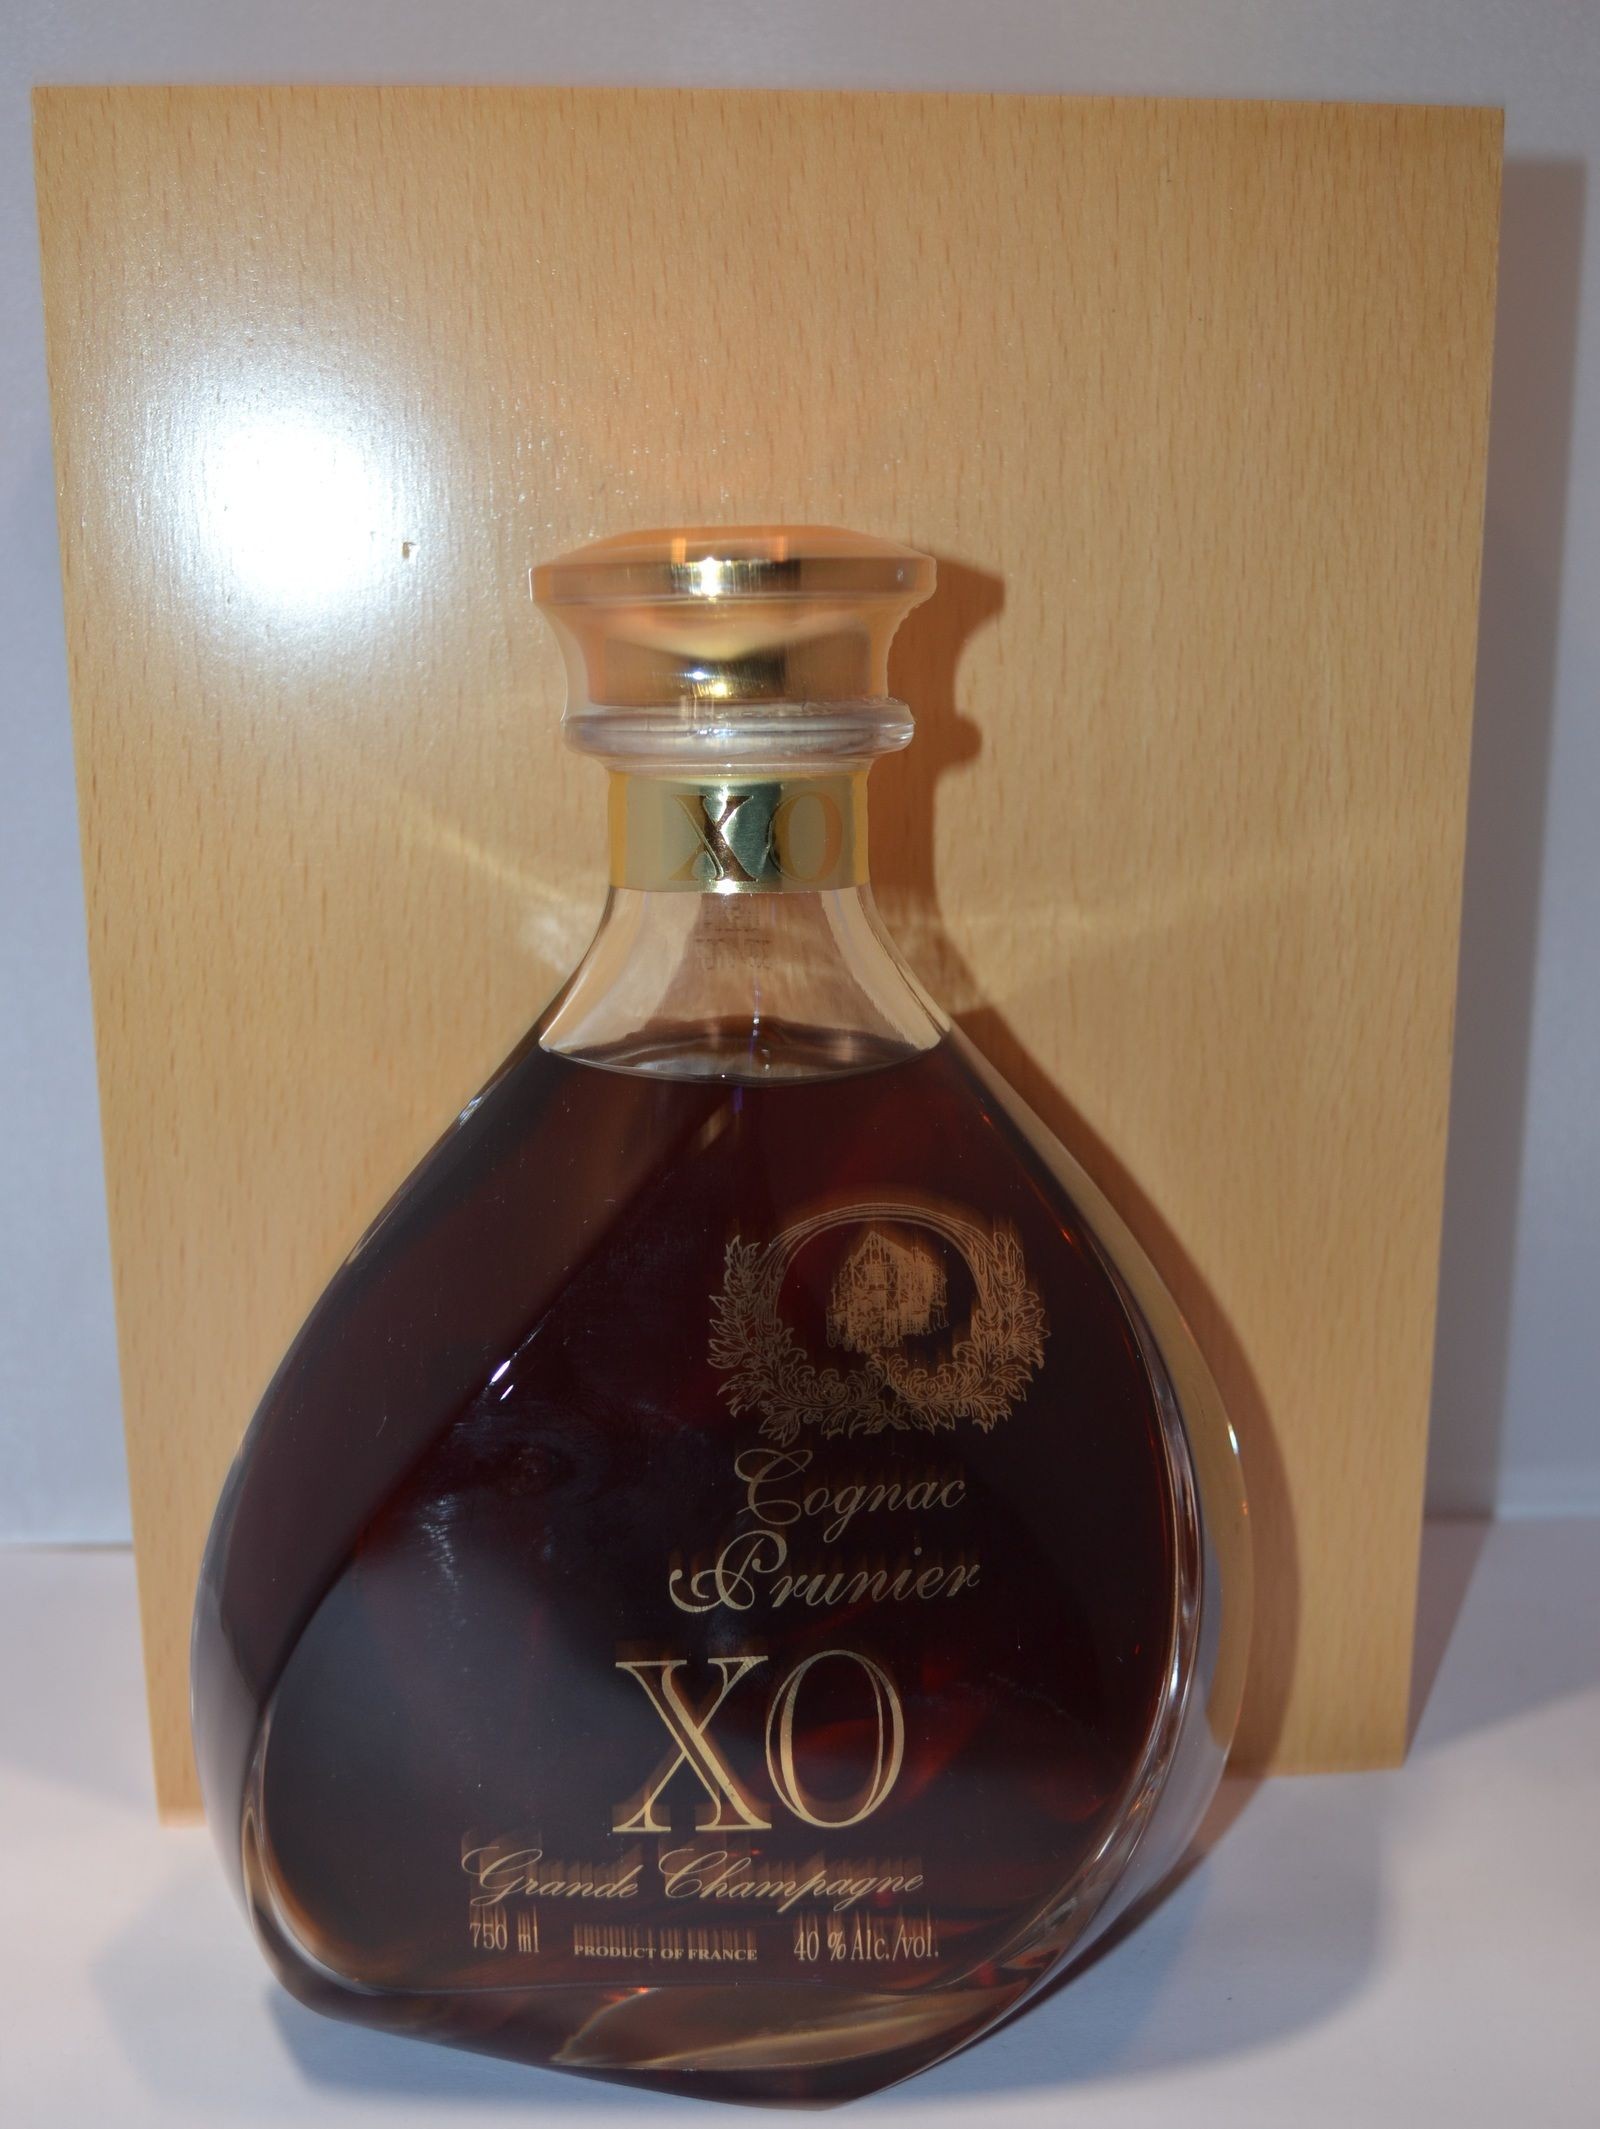 Prunier's Andersen XO Cognac Gift Set 酒 | challengesnews.com